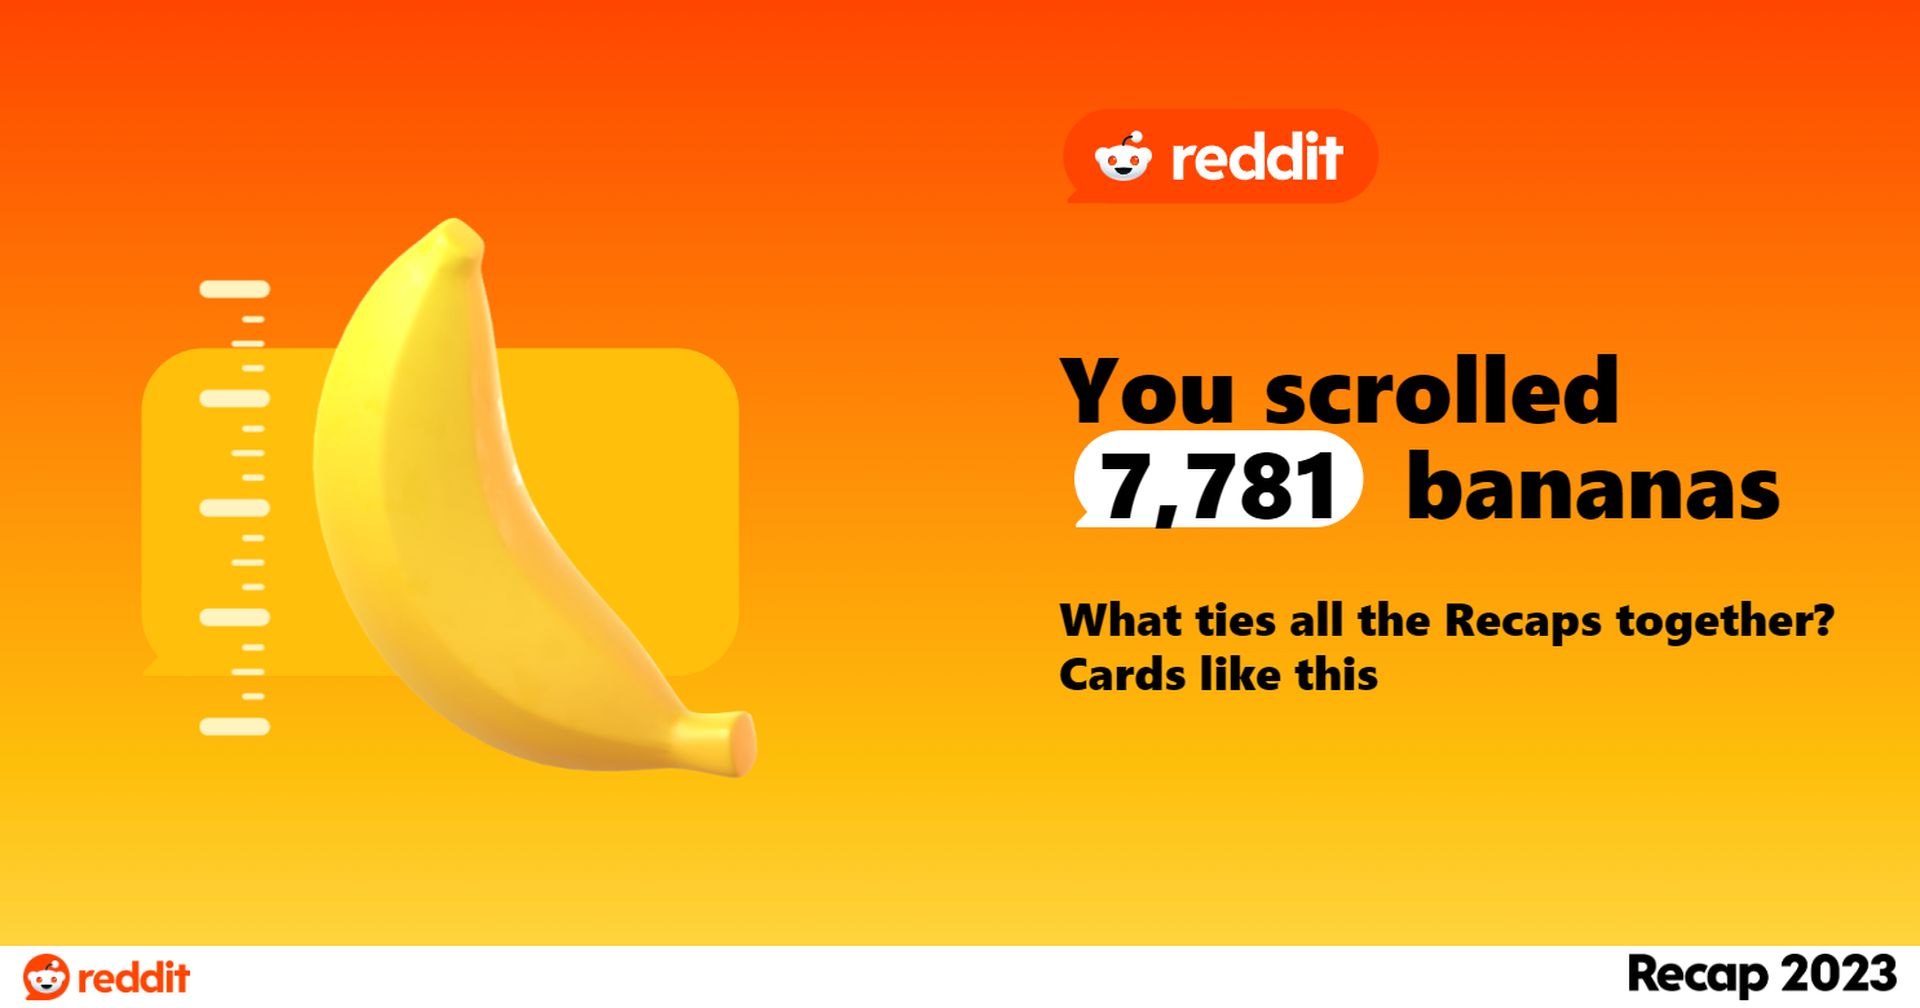 Reddit Recap 2023 มาแล้ว! เรียนรู้ว่าคุณเลื่อนกล้วยไปกี่ลูกในปีนี้